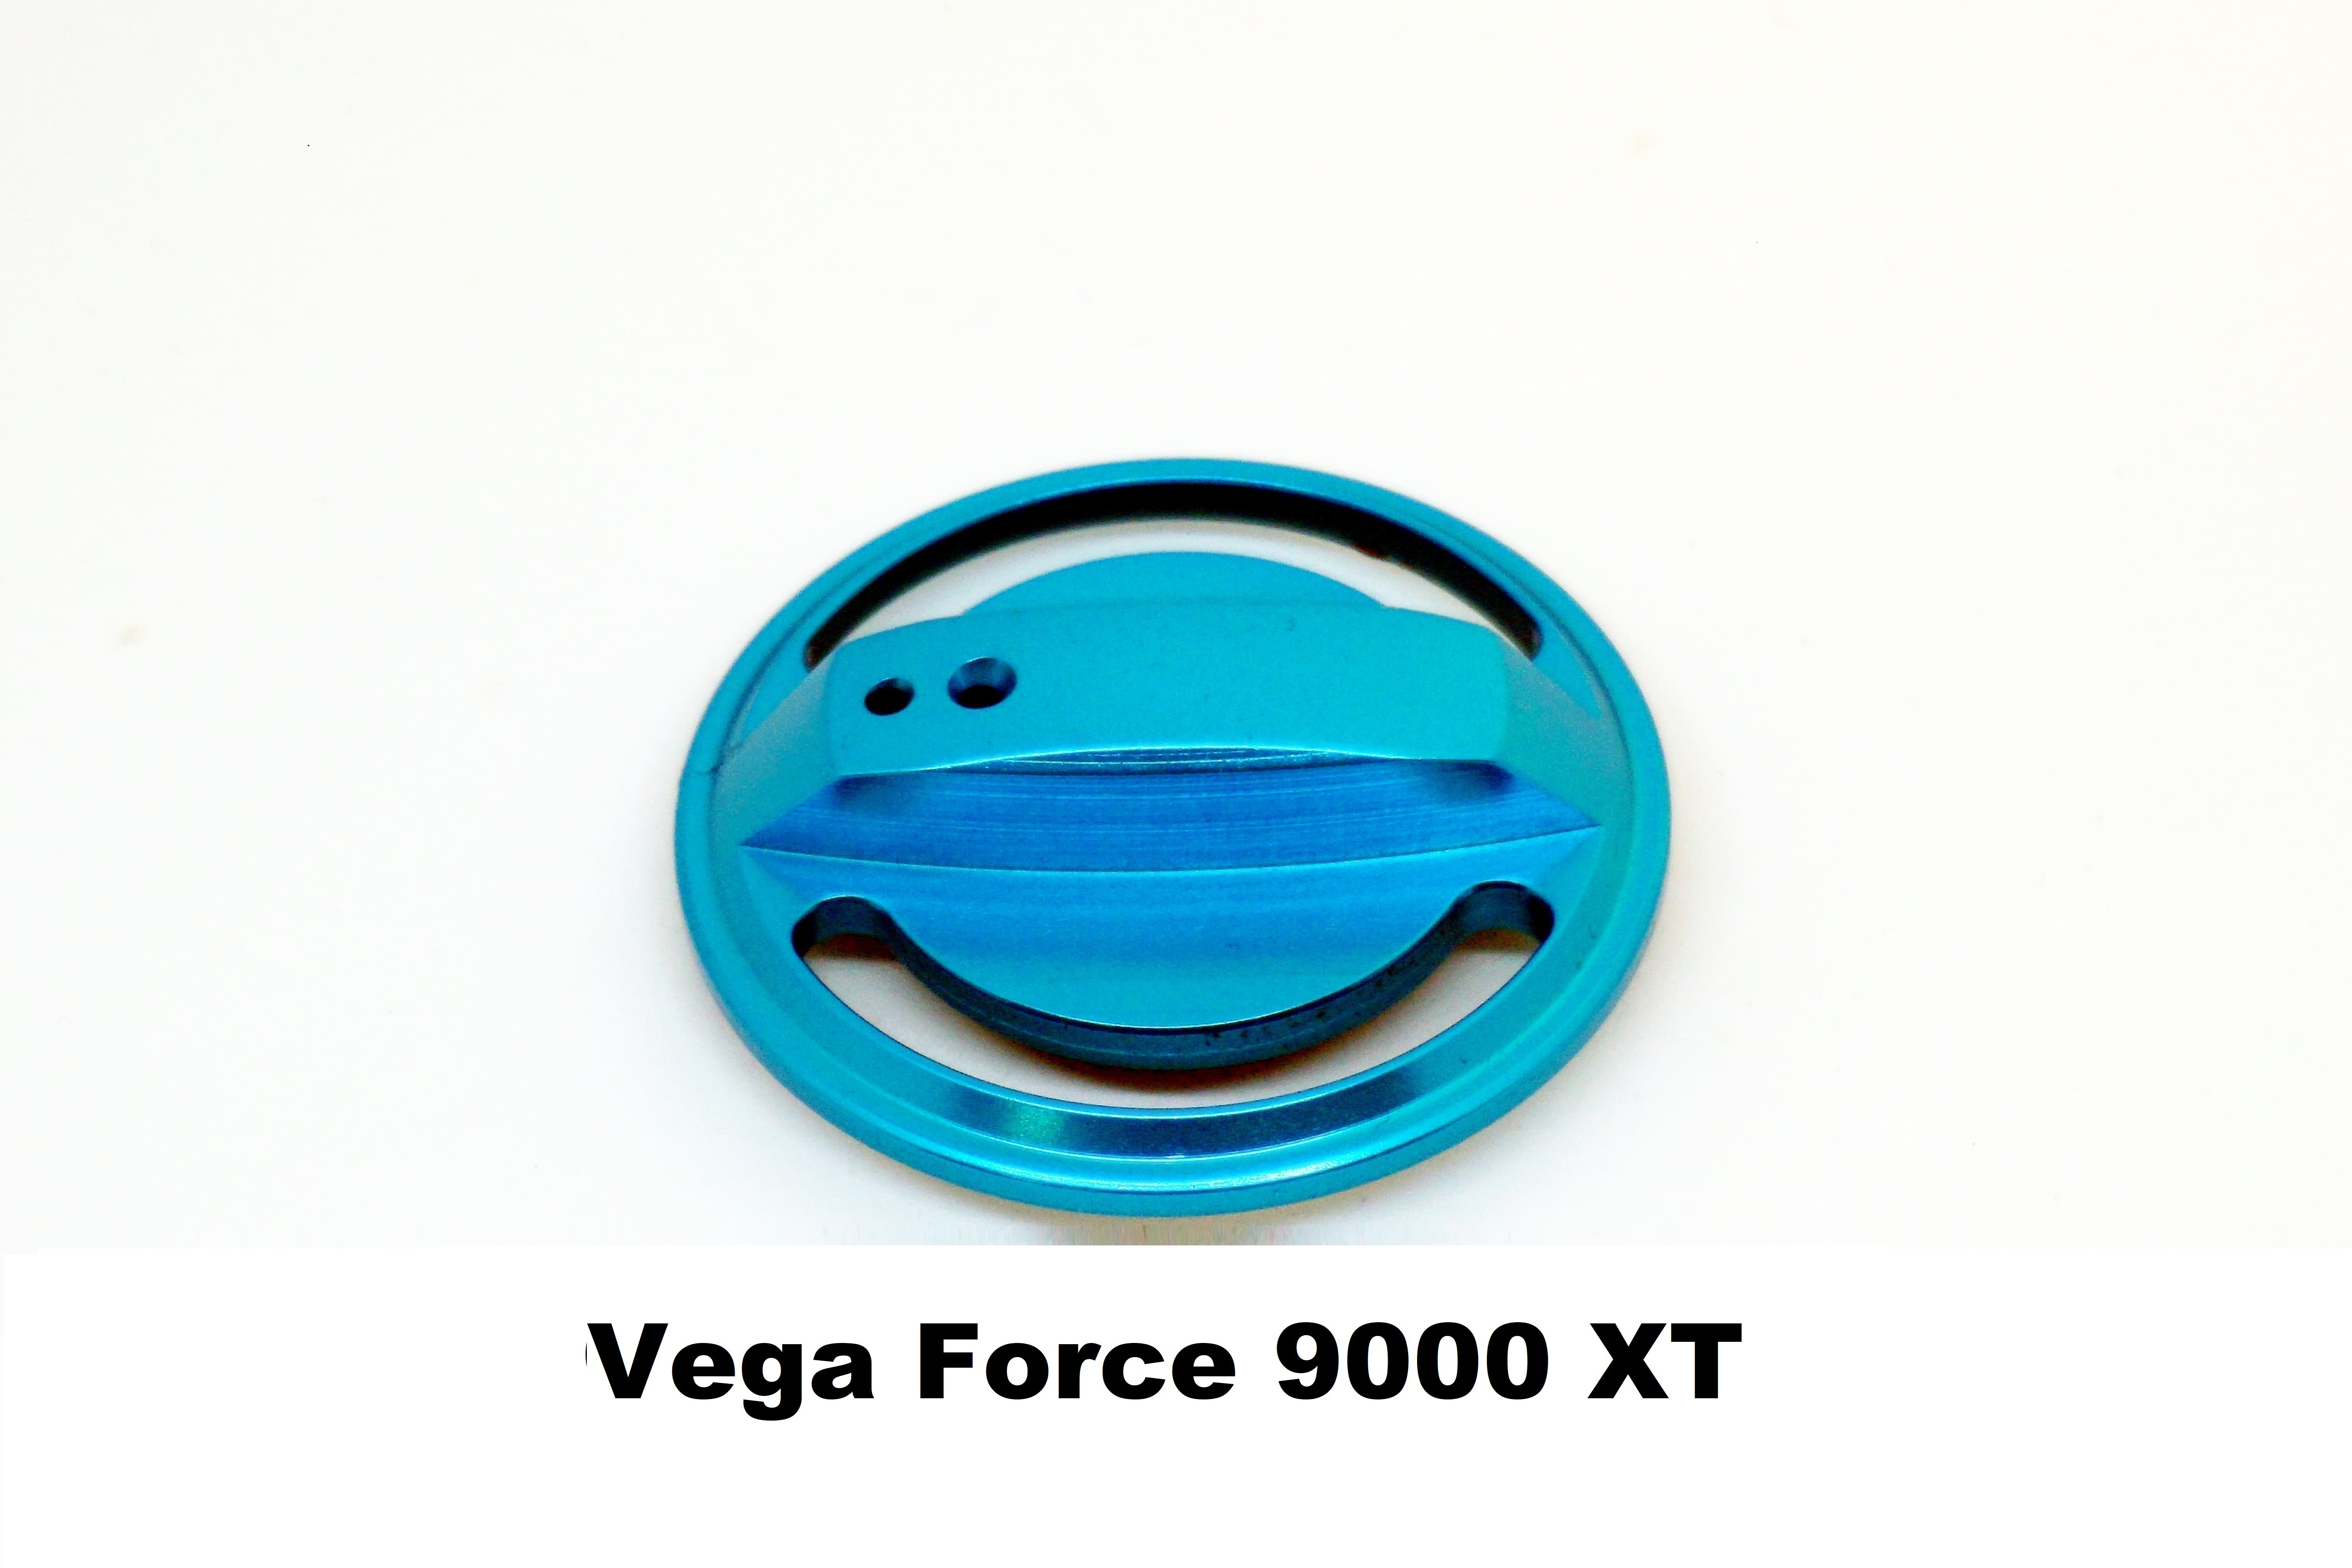 Tapón de Freno Vega Force 9000 XT